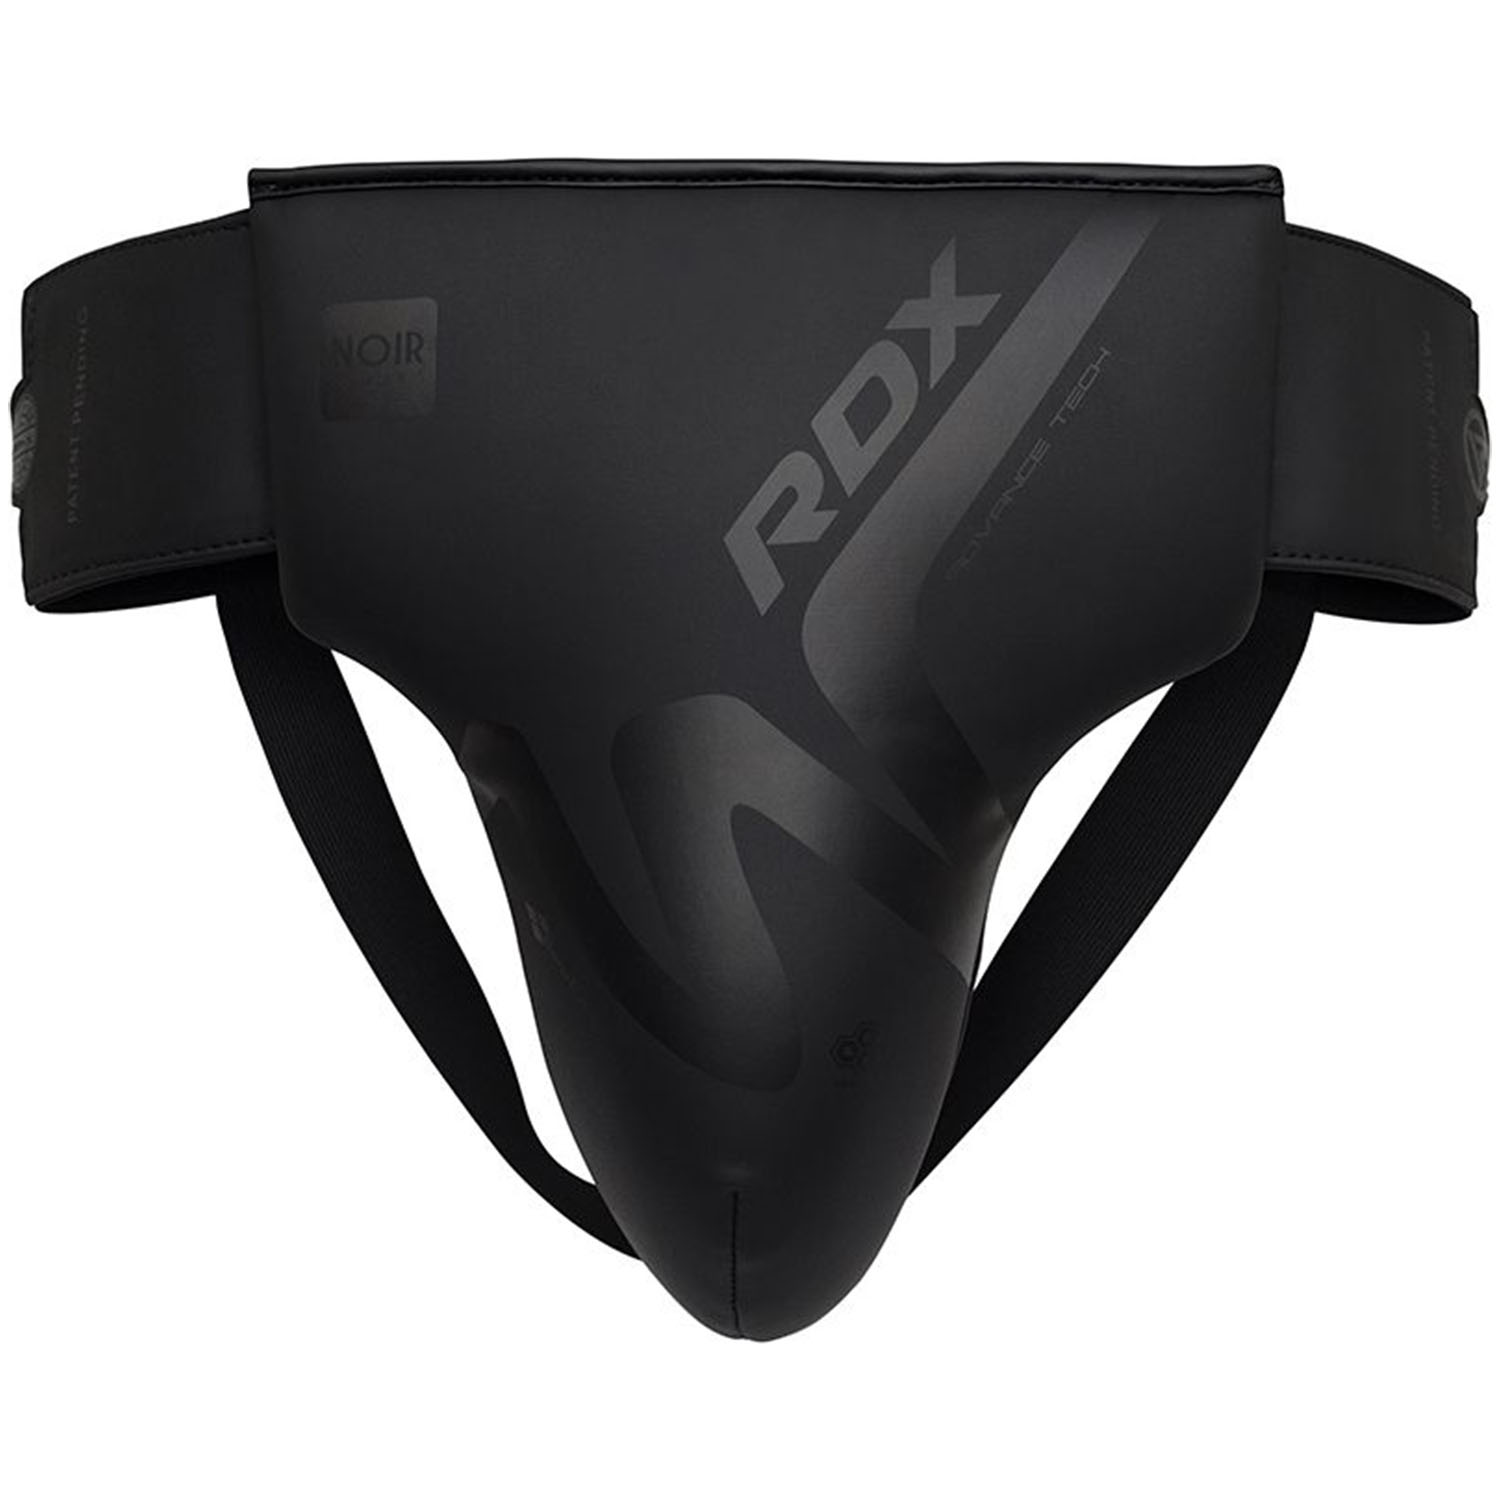 RDX Tiefschutz, Noir Series T15, schwarz-matt, XL